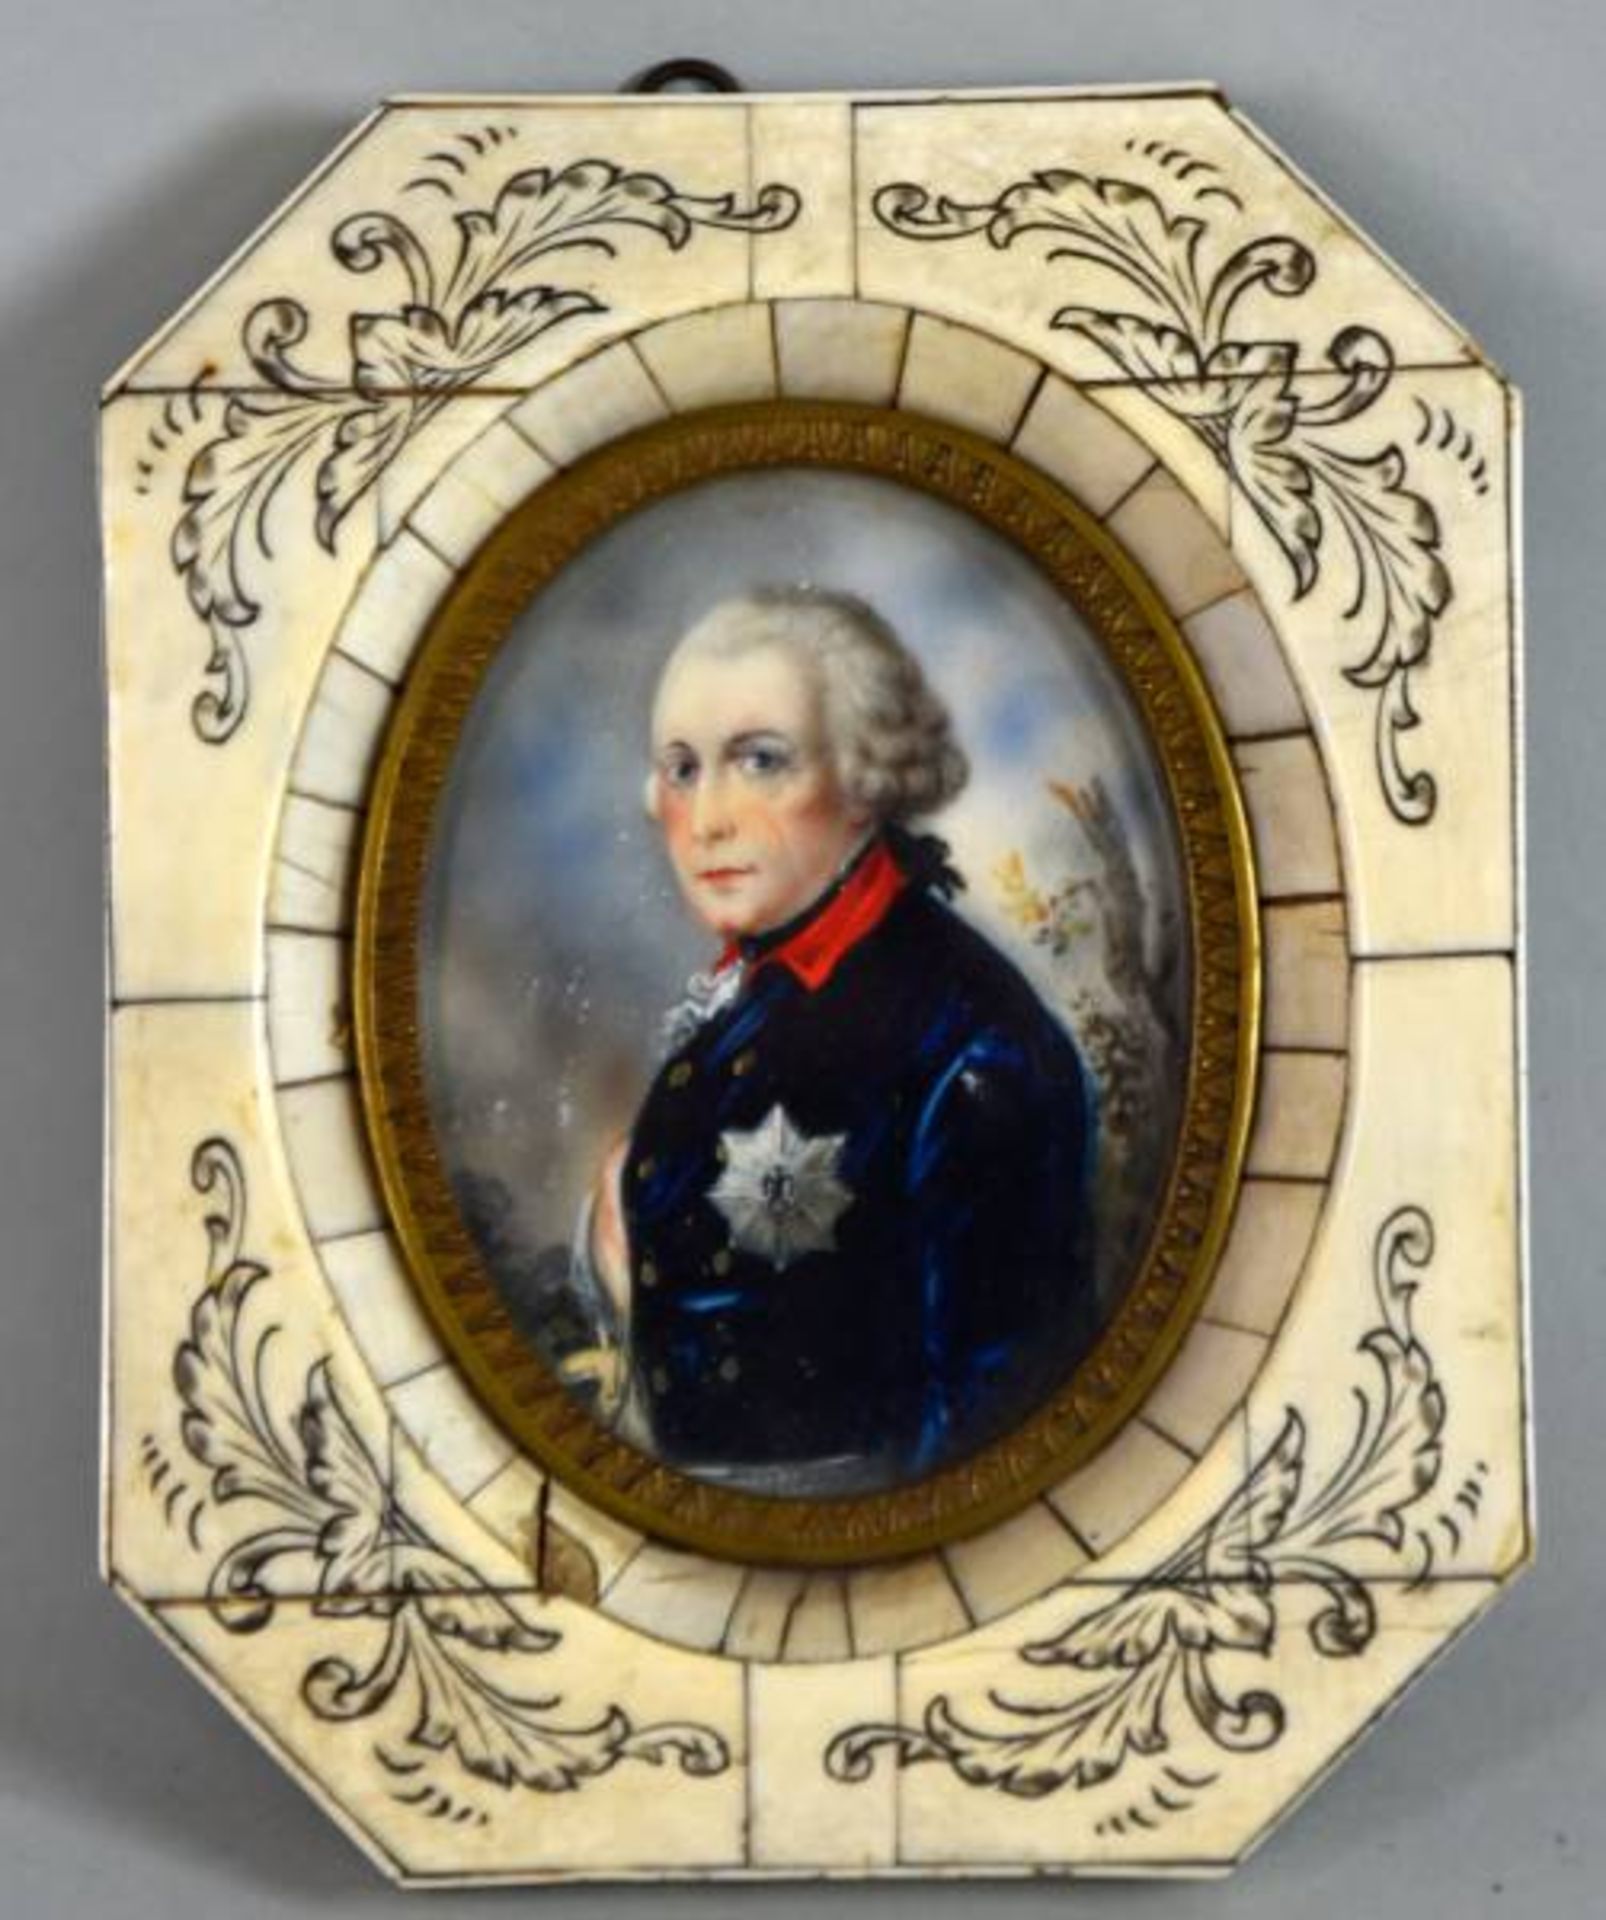 MINIATUR oval, Portrait von Friedrich II von Preußen (Friedrich der Große) in Uniform mit Orden,